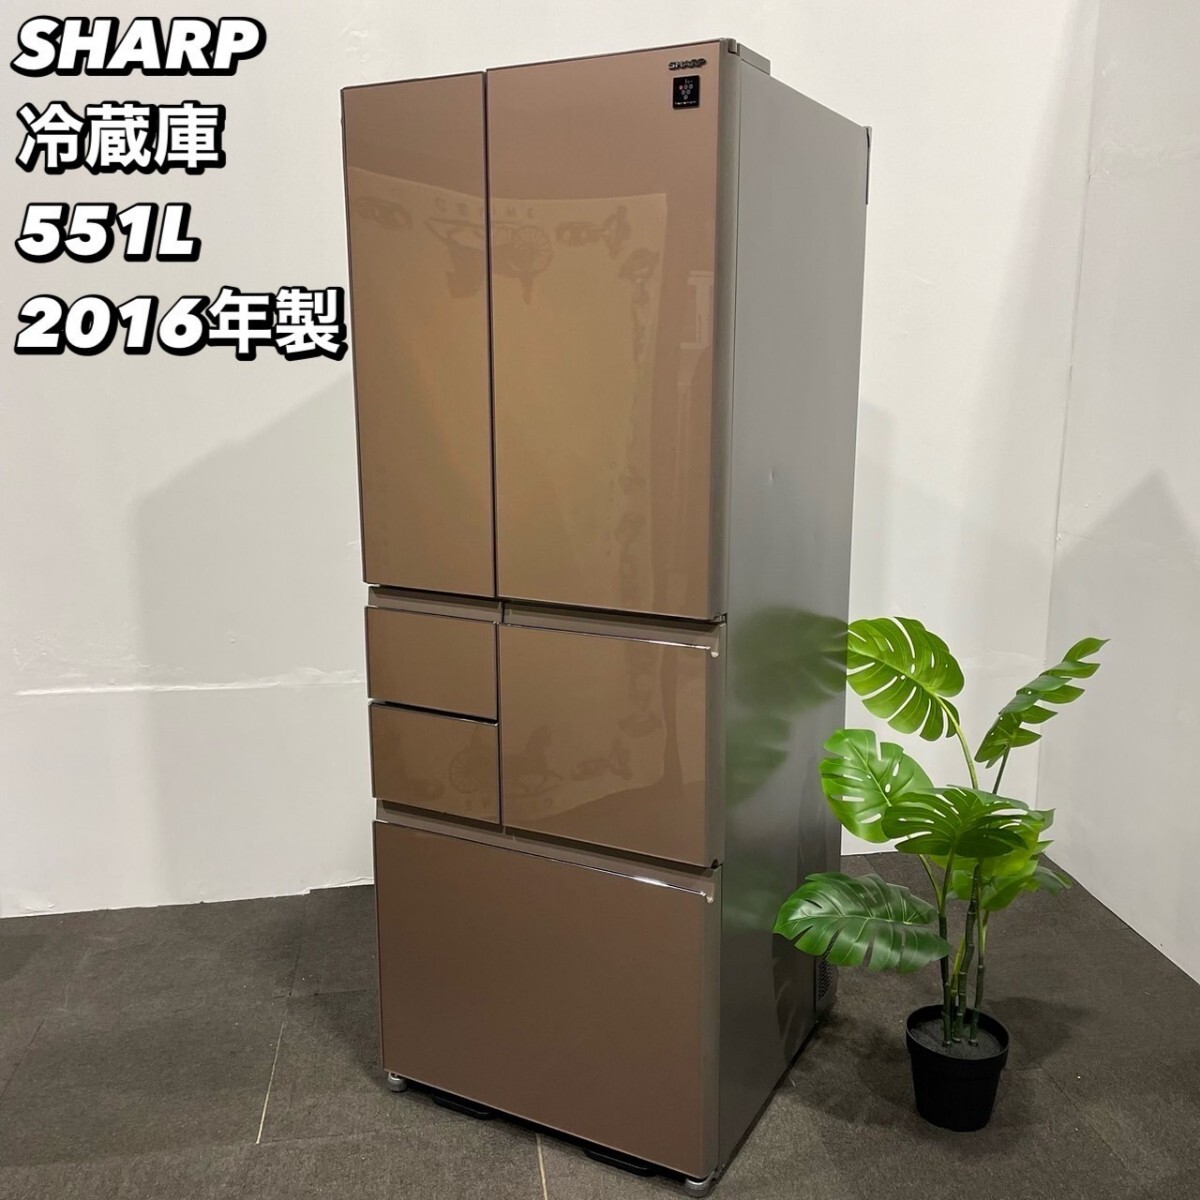 SHARP 冷蔵庫 SJ-GT55C-T 551L 2016年製 家電 Ma054